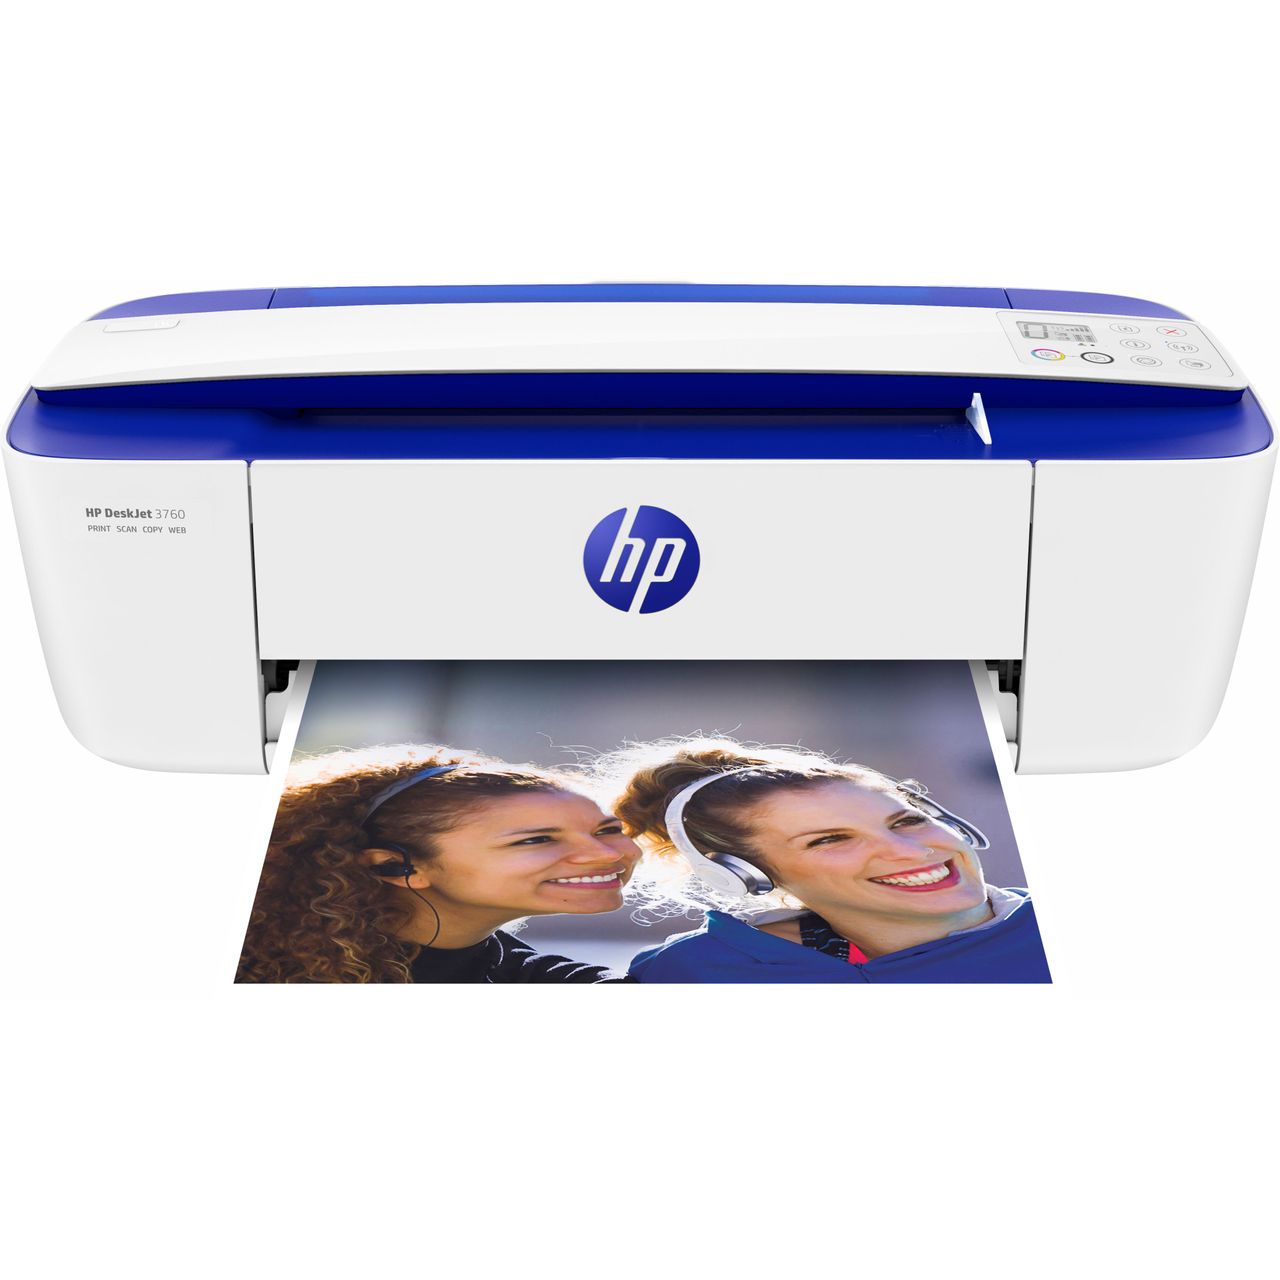 HP DeskJet 3760 Inkjet Printer Review